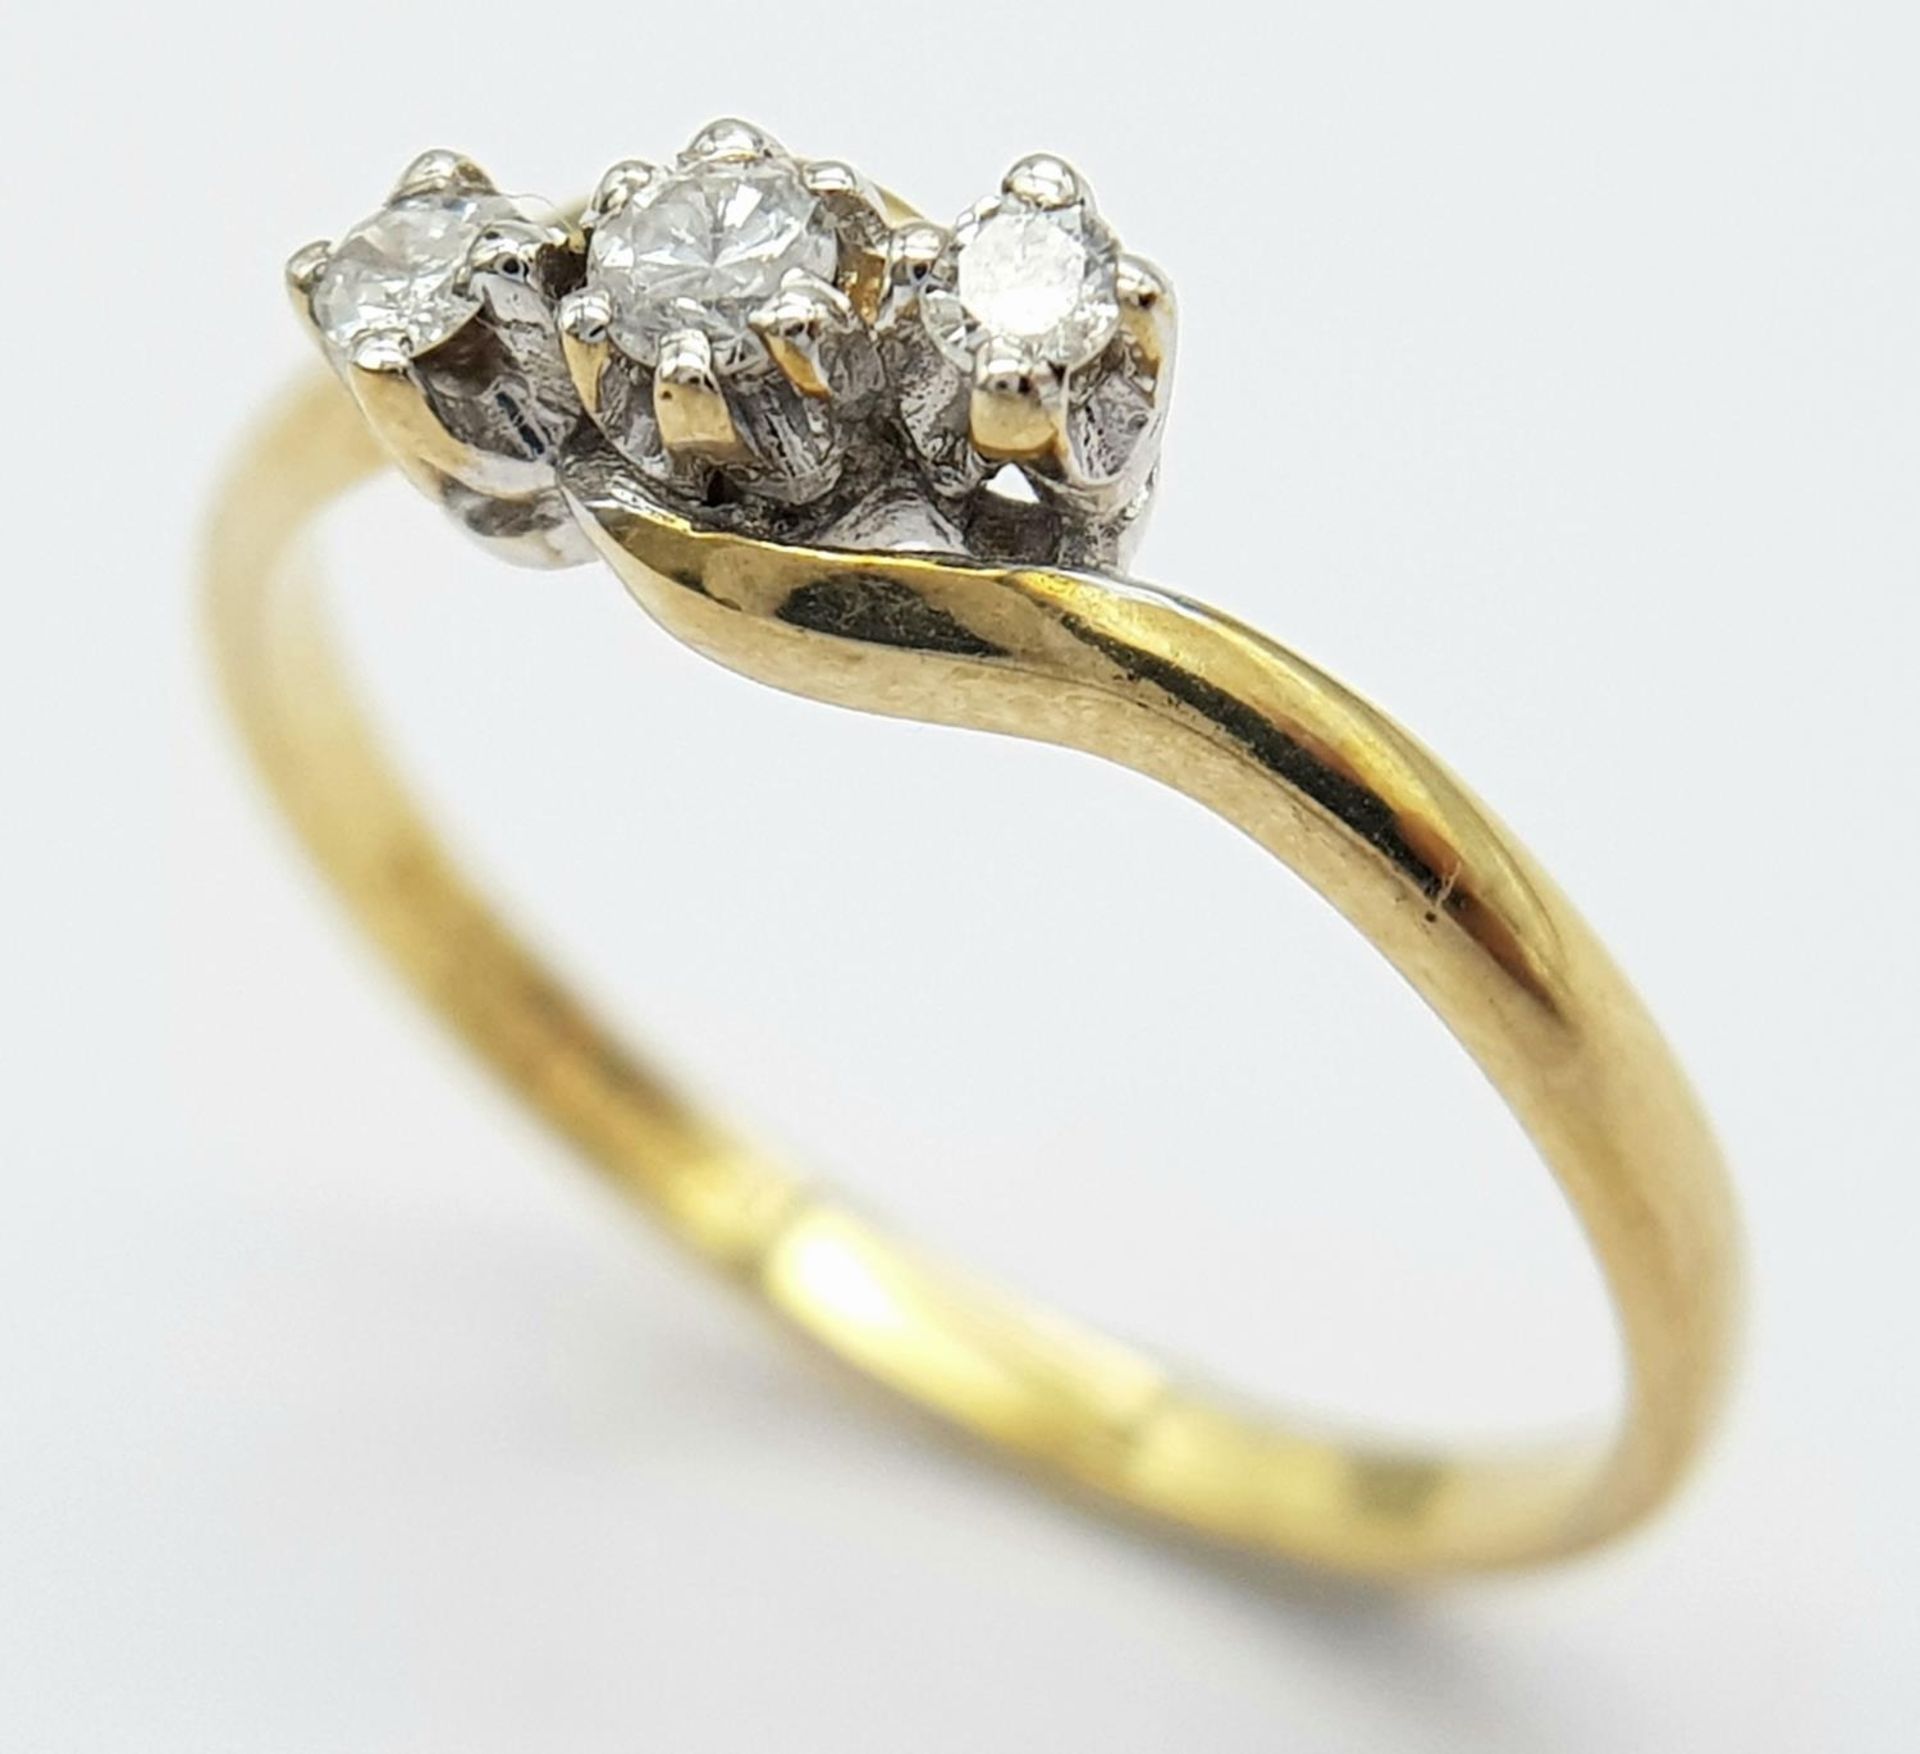 A 9K YELLOW GOLD 3 STONE DIAMOND TWIST RING 0.12CT 1.5G SIZE N. ref: SPAS 9028 - Bild 2 aus 5